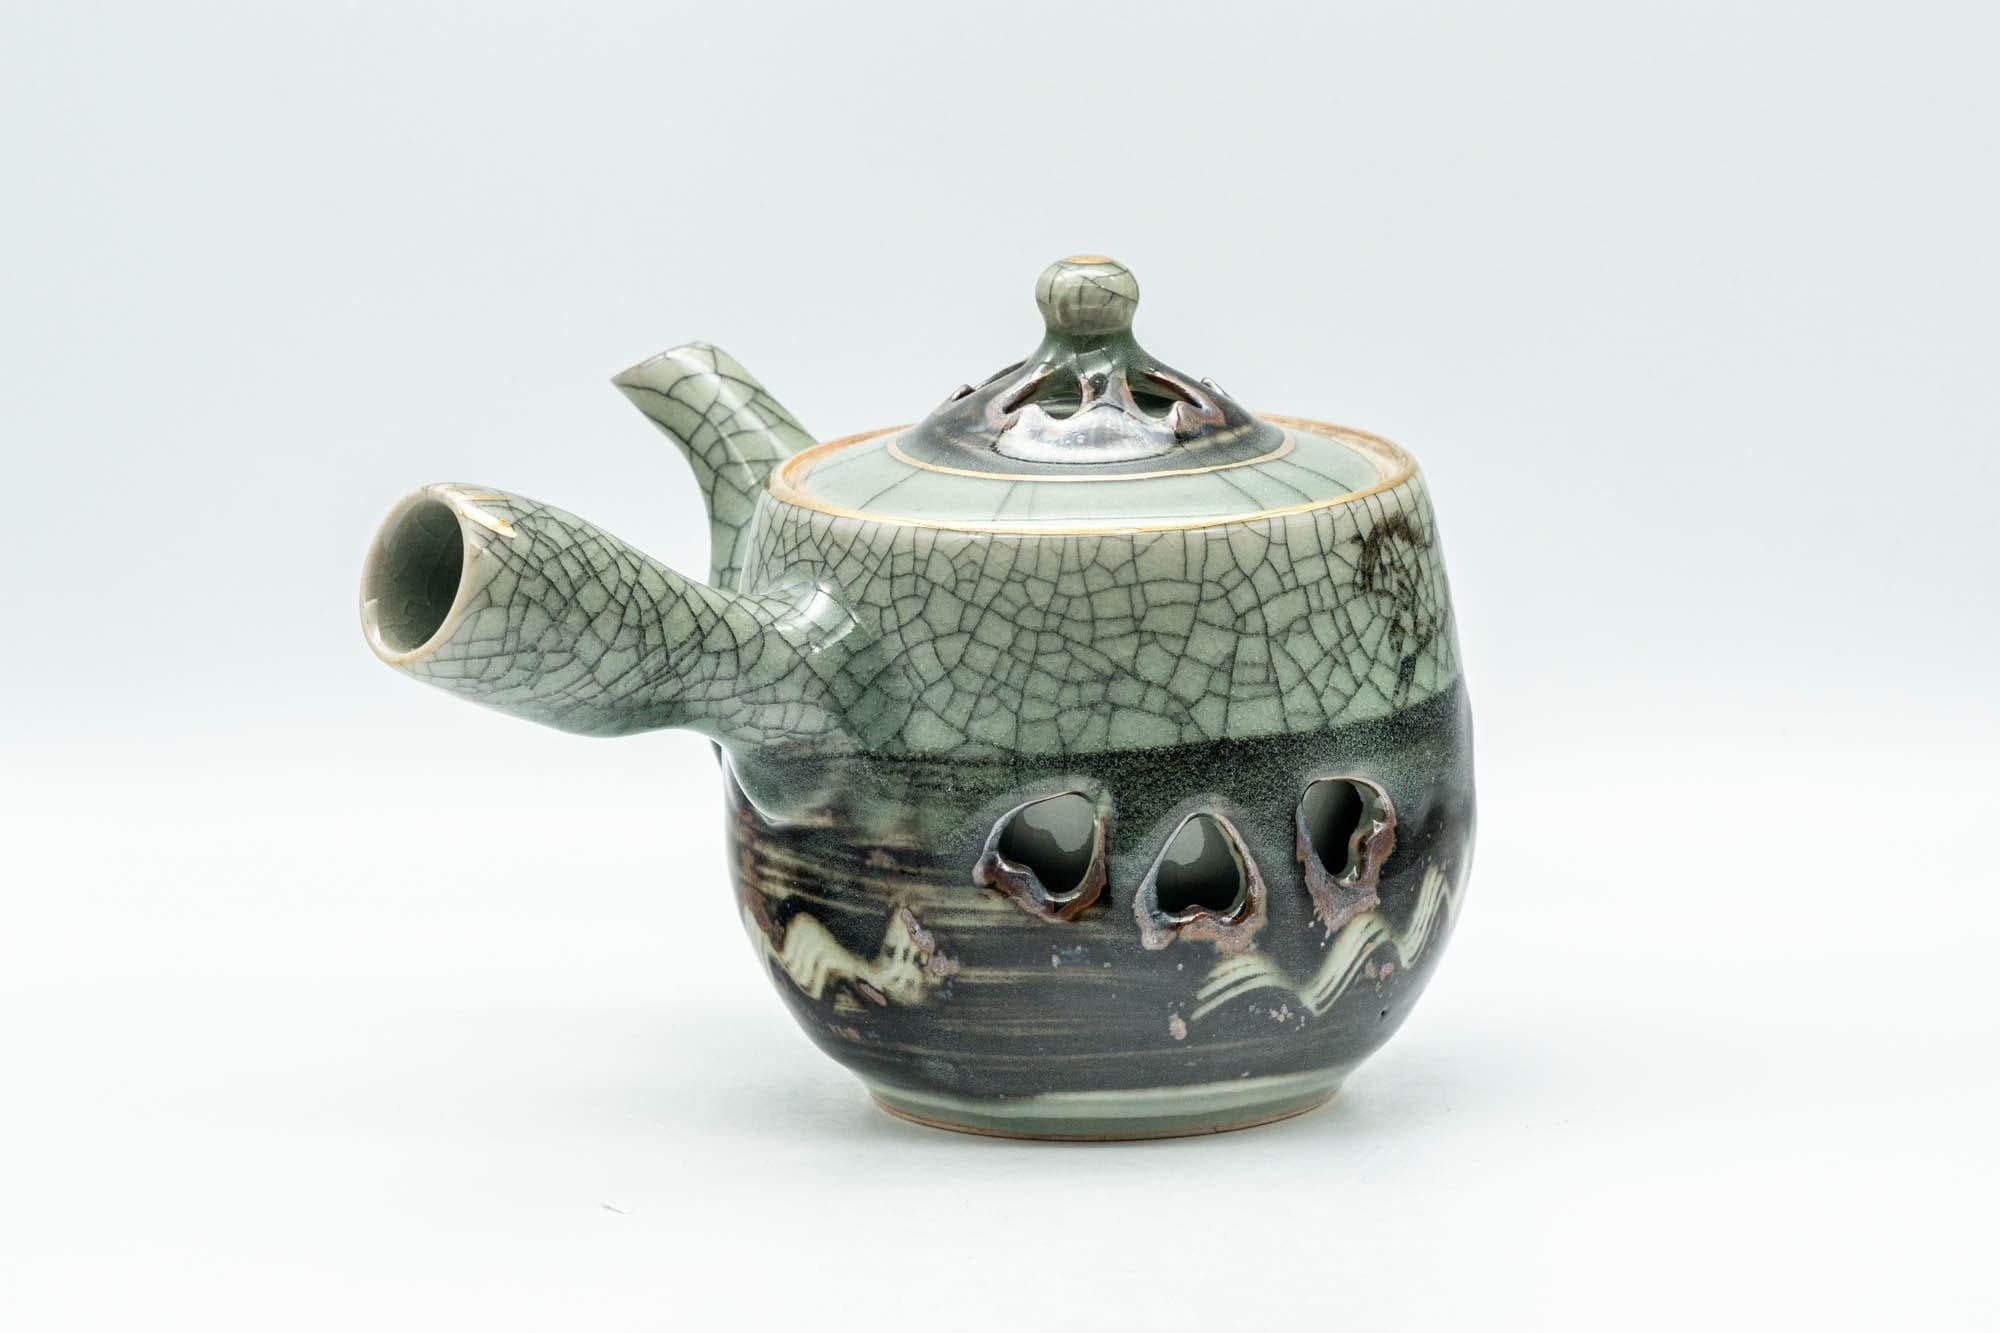 Japanese Tea Set - Obori Soma-yaki Double-walled Kyusu Teapot with 3 Yunomi Teacups - Tezumi